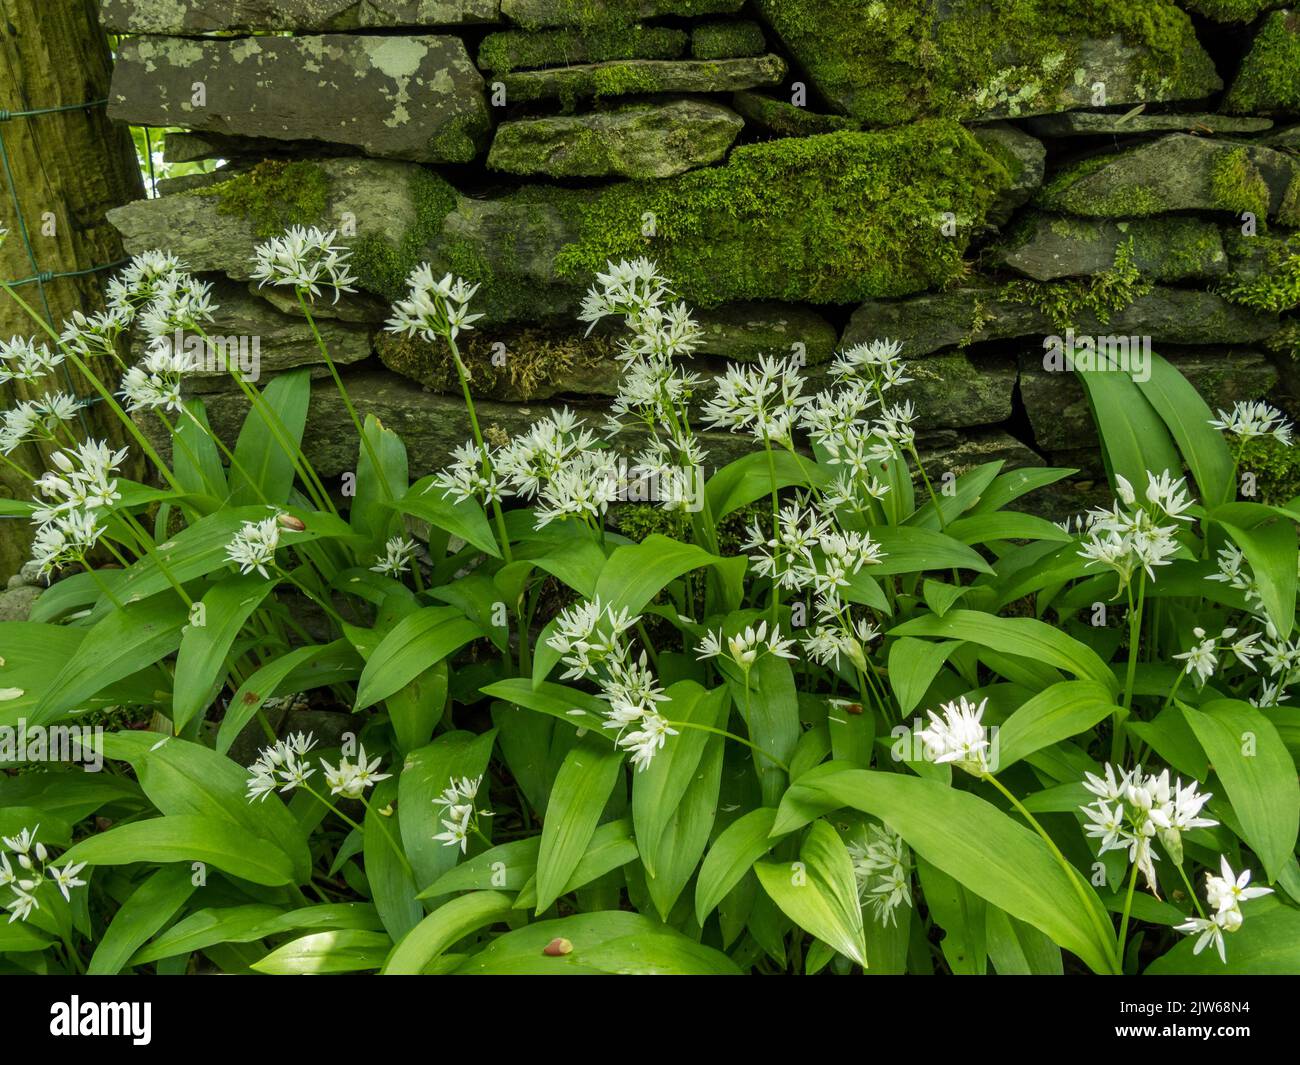 Plantas de ajo silvestre (Allium ursinum) con hojas verdes y flores blancas que crecen delante de la pared de piedra cubierta de musgo viejo, Colonsay House Gardens. Foto de stock